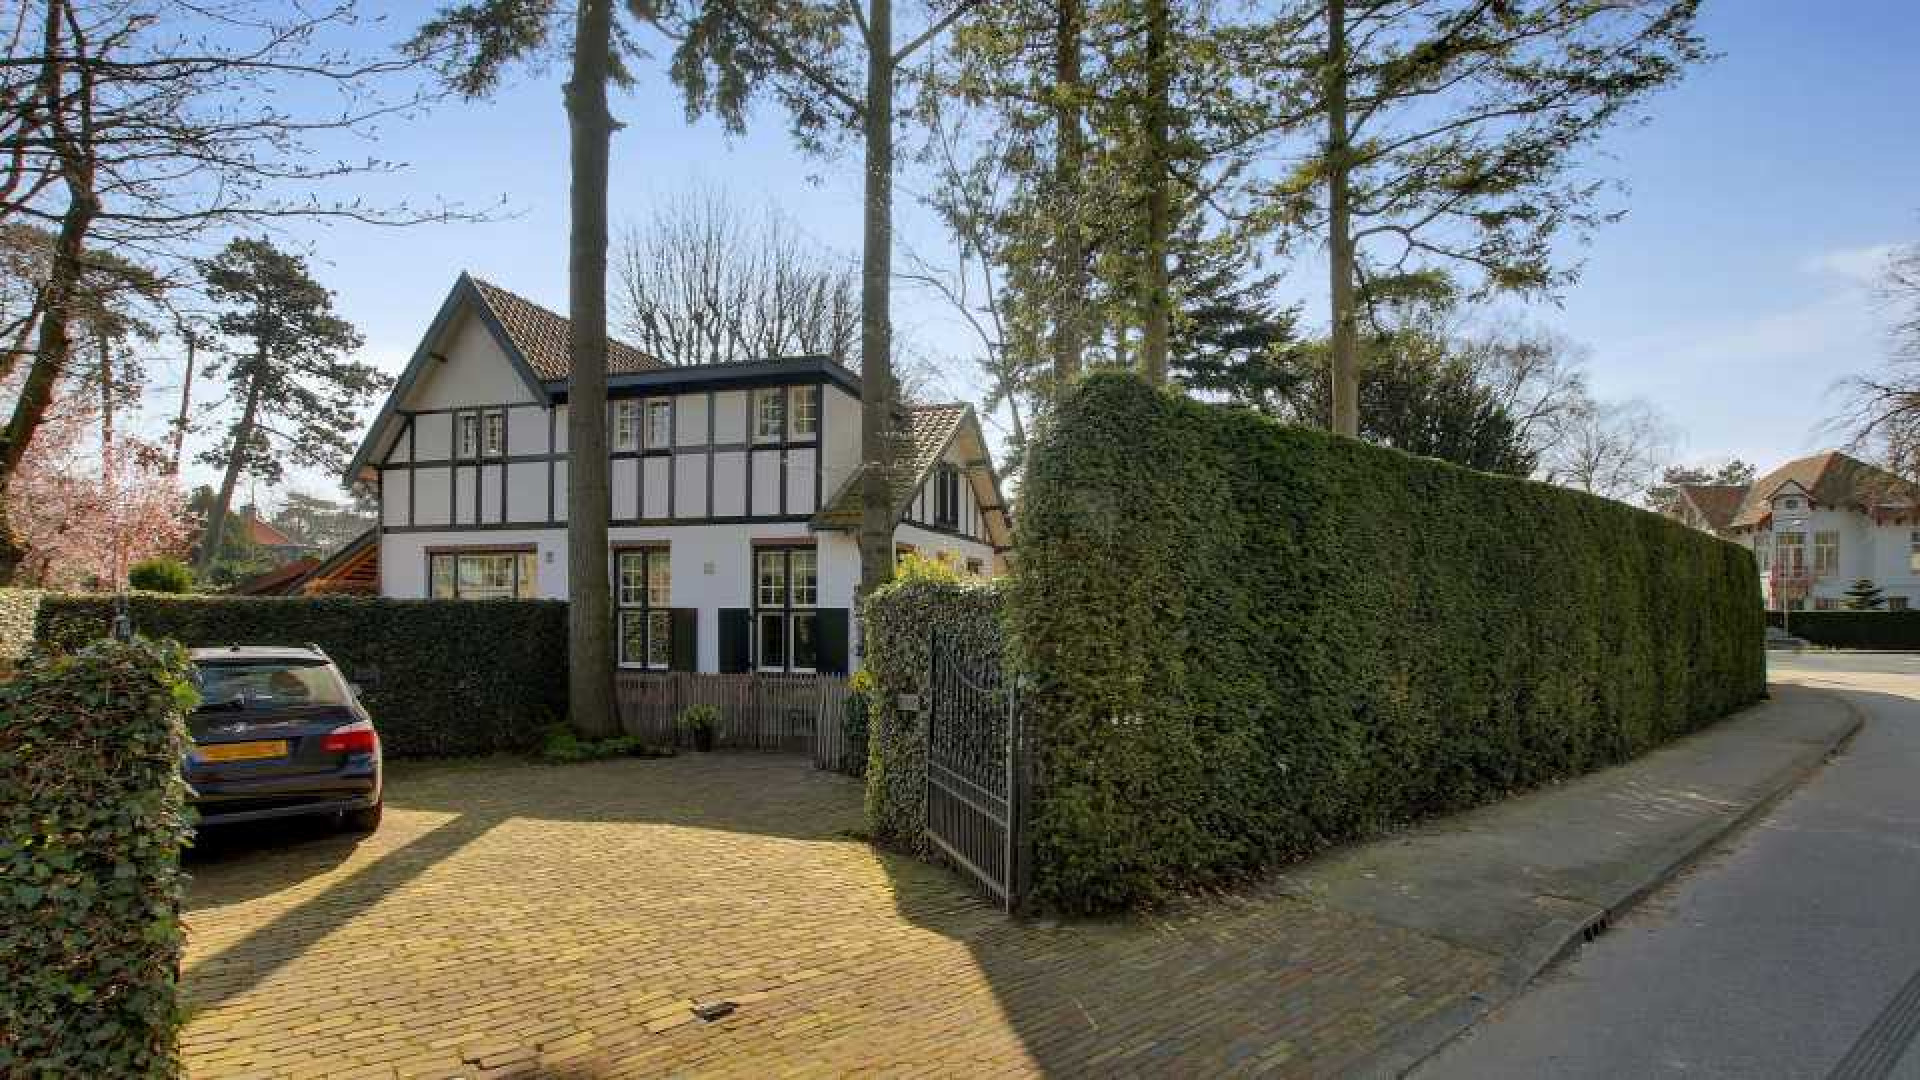 Hart van Nederland presentatrice Gallyon van Vessem koopt koloniaal landhuis. Zie foto's